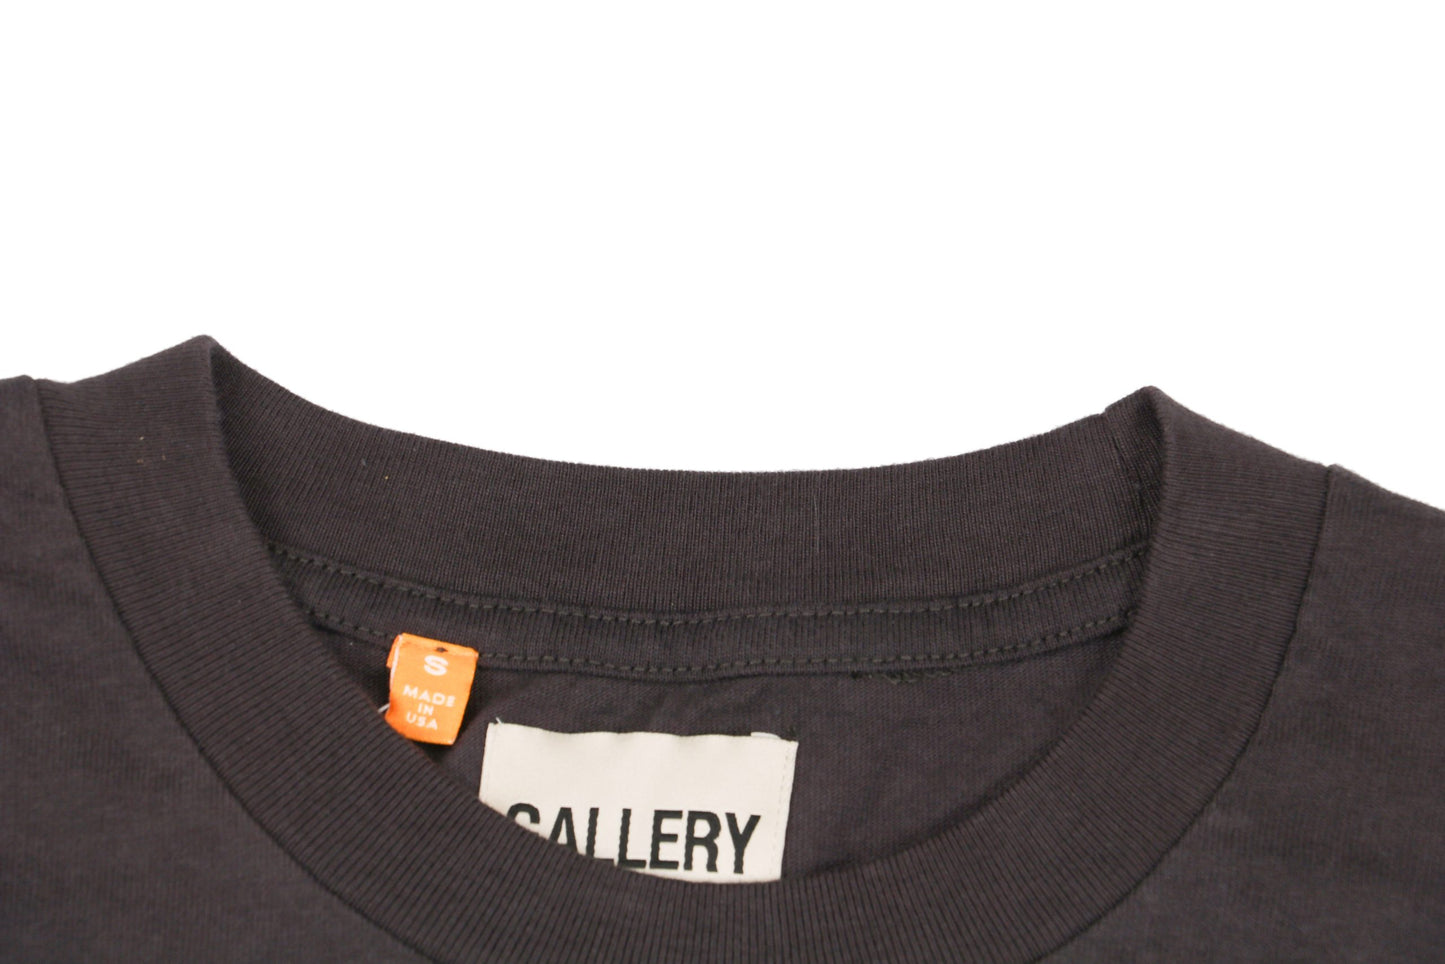 Gallery Dept Fucked Up Logo Black T-Shirt